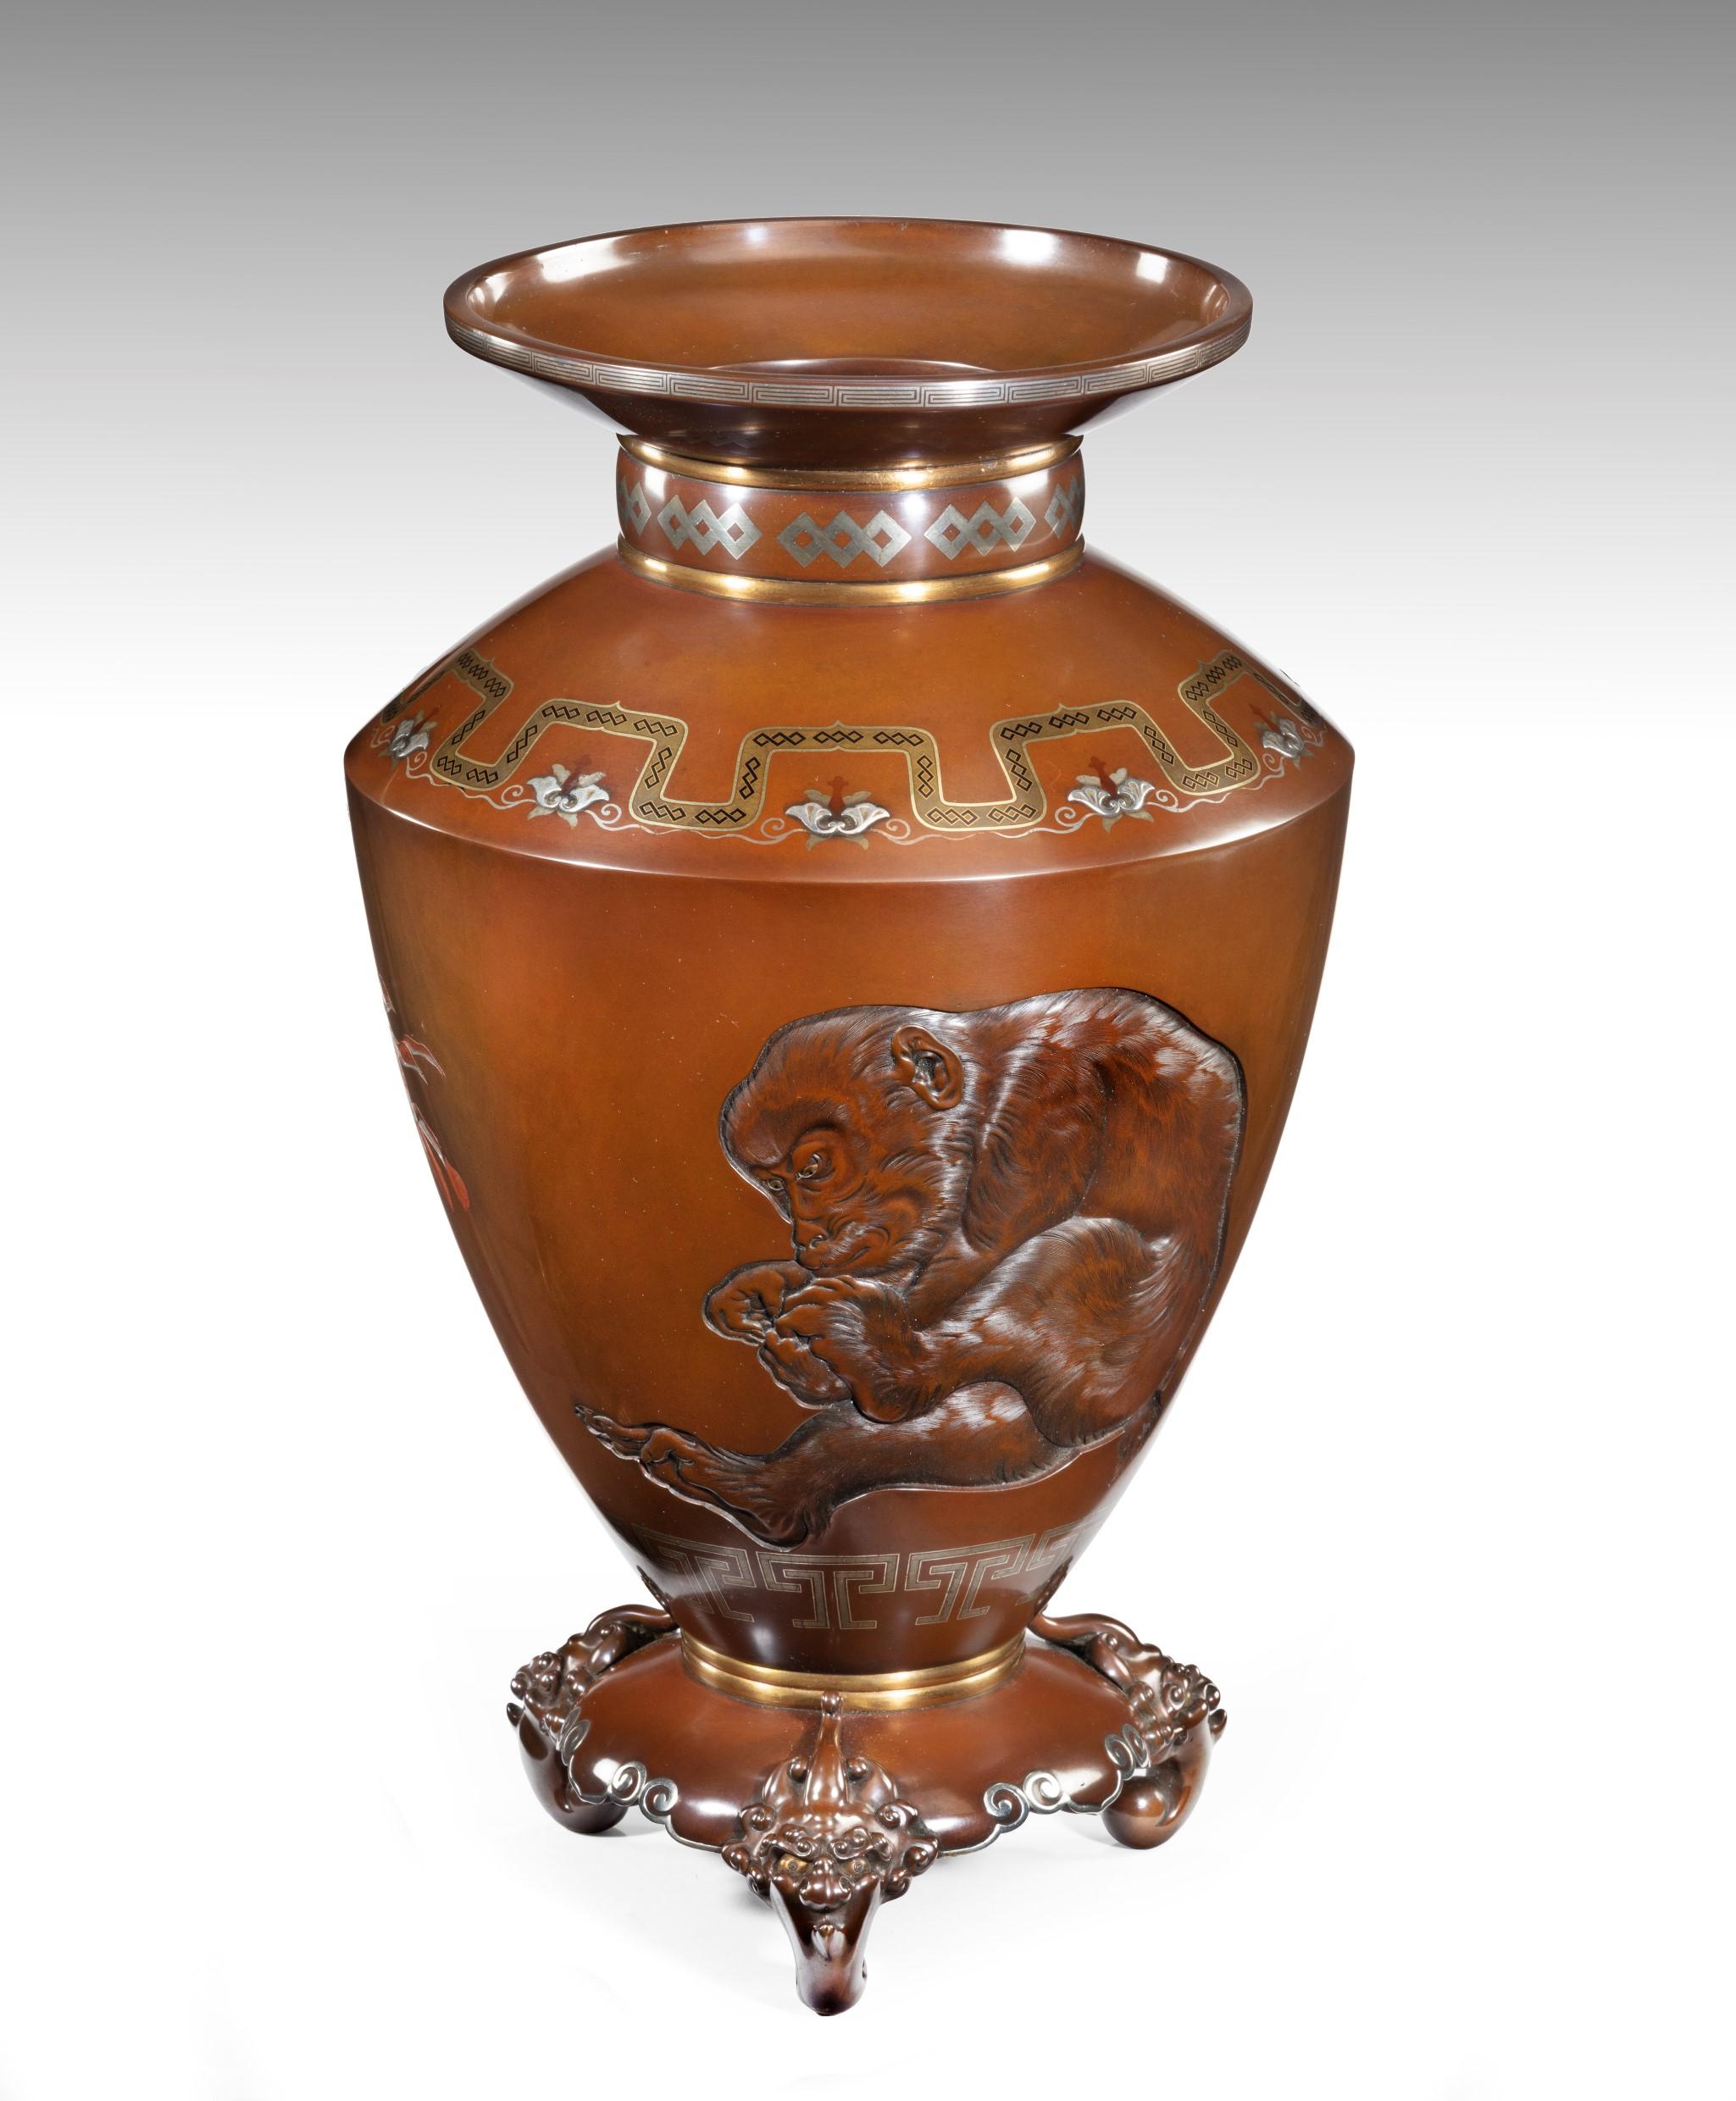 Dans le cadre de notre collection d'œuvres d'art japonaises, nous sommes ravis d'offrir ce vase en bronze signé par l'artiste de l'école Kaga, datant du début de la période Meiji (1868-1912). Ce magnifique objet en métal de qualité date des toutes